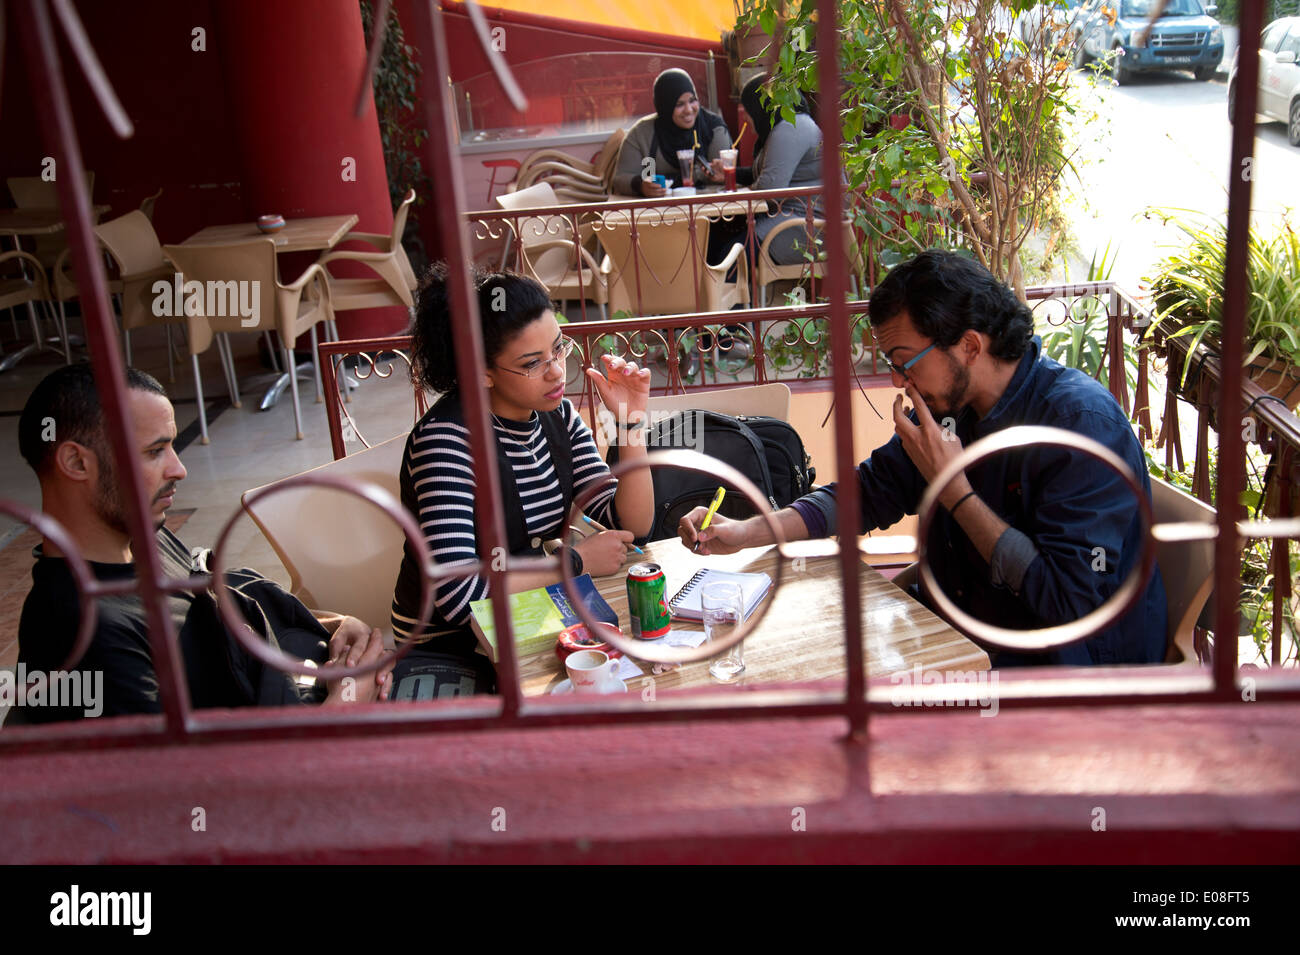 Tunis, Tunisie. Les jeunes dans un café à discuter et prendre des notes, dans l'arrière-plan deux jeunes femmes en tchador. Banque D'Images